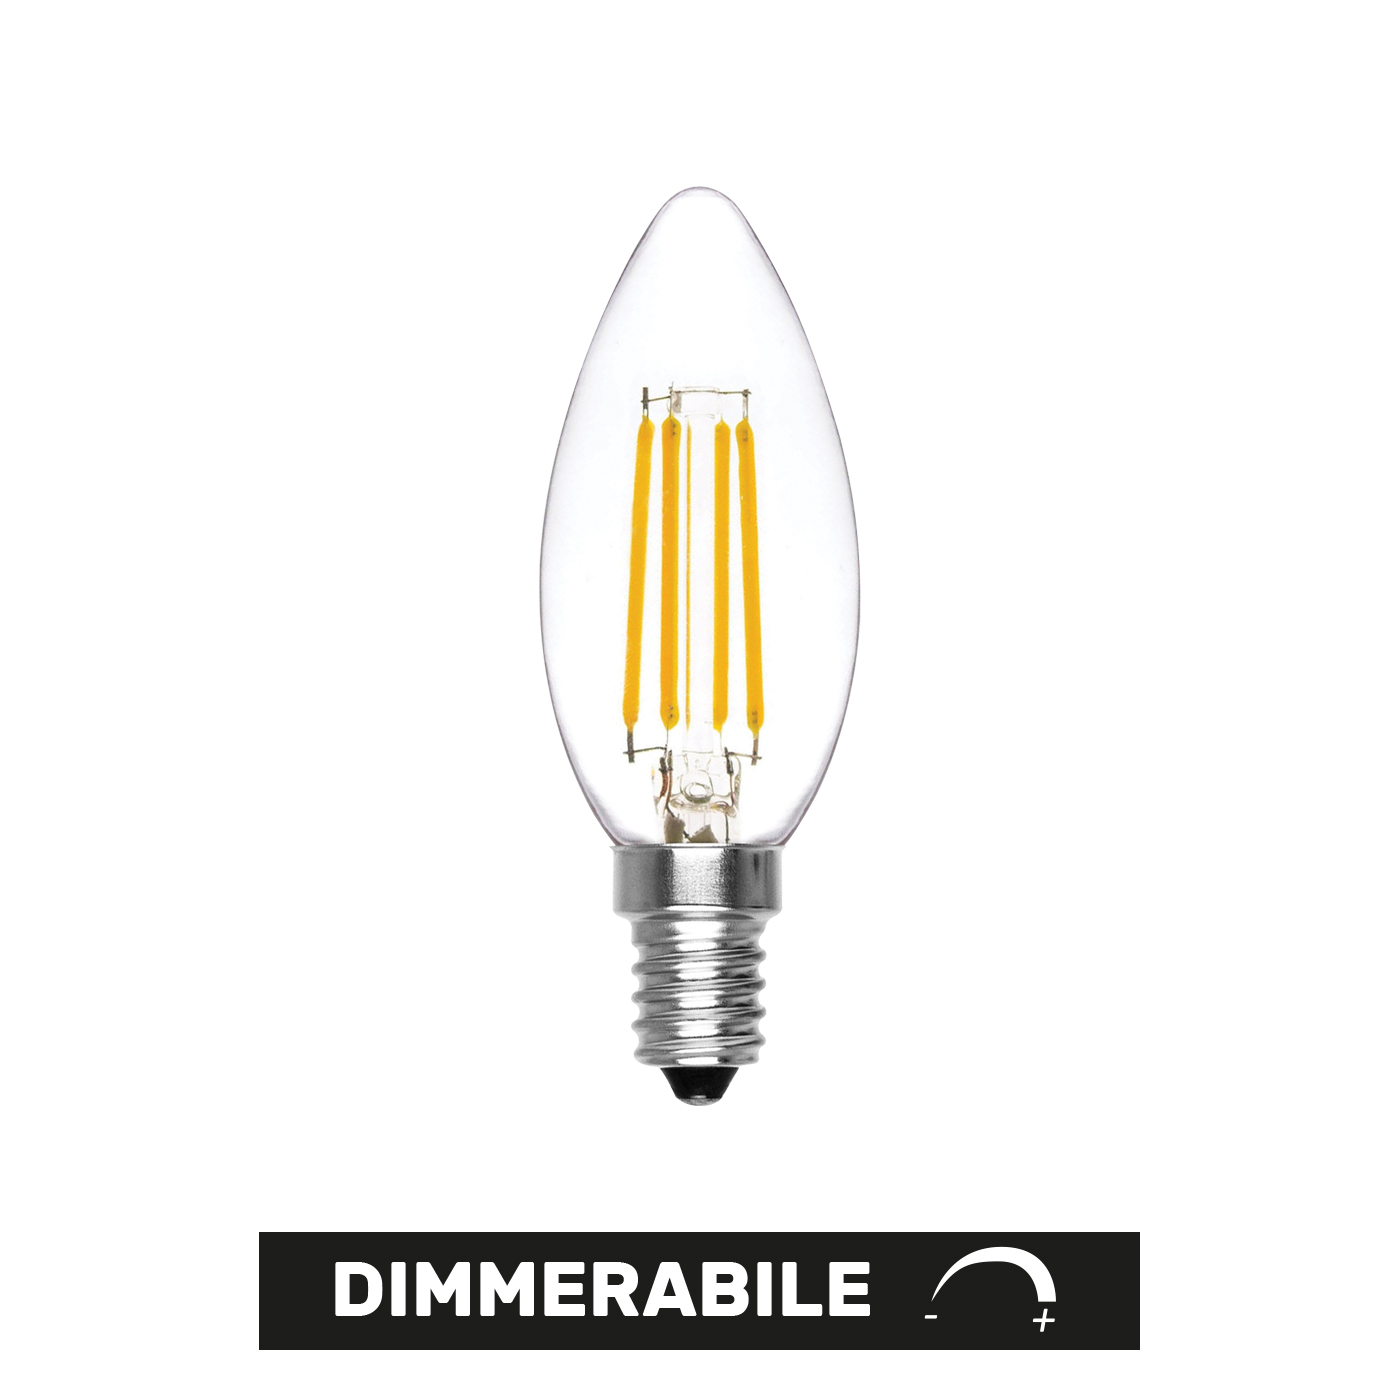 Oliva Dimmerabile LED E14 6W 4000K 